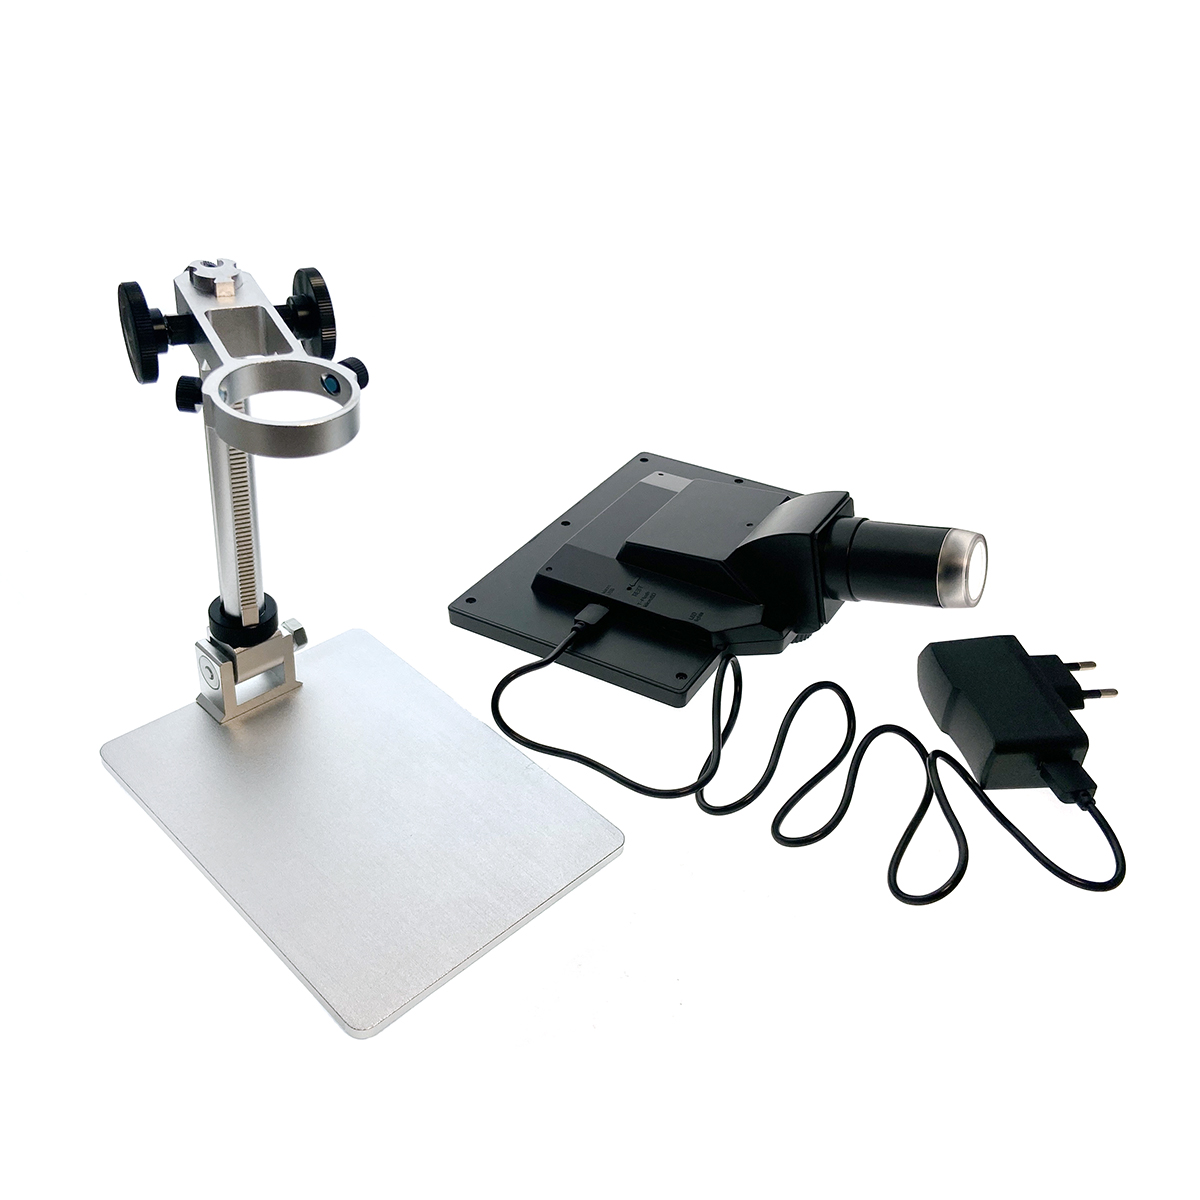 Цифровой микроскоп E-G1200A USB Espada, 12 Мп с дисплеем и подставкой